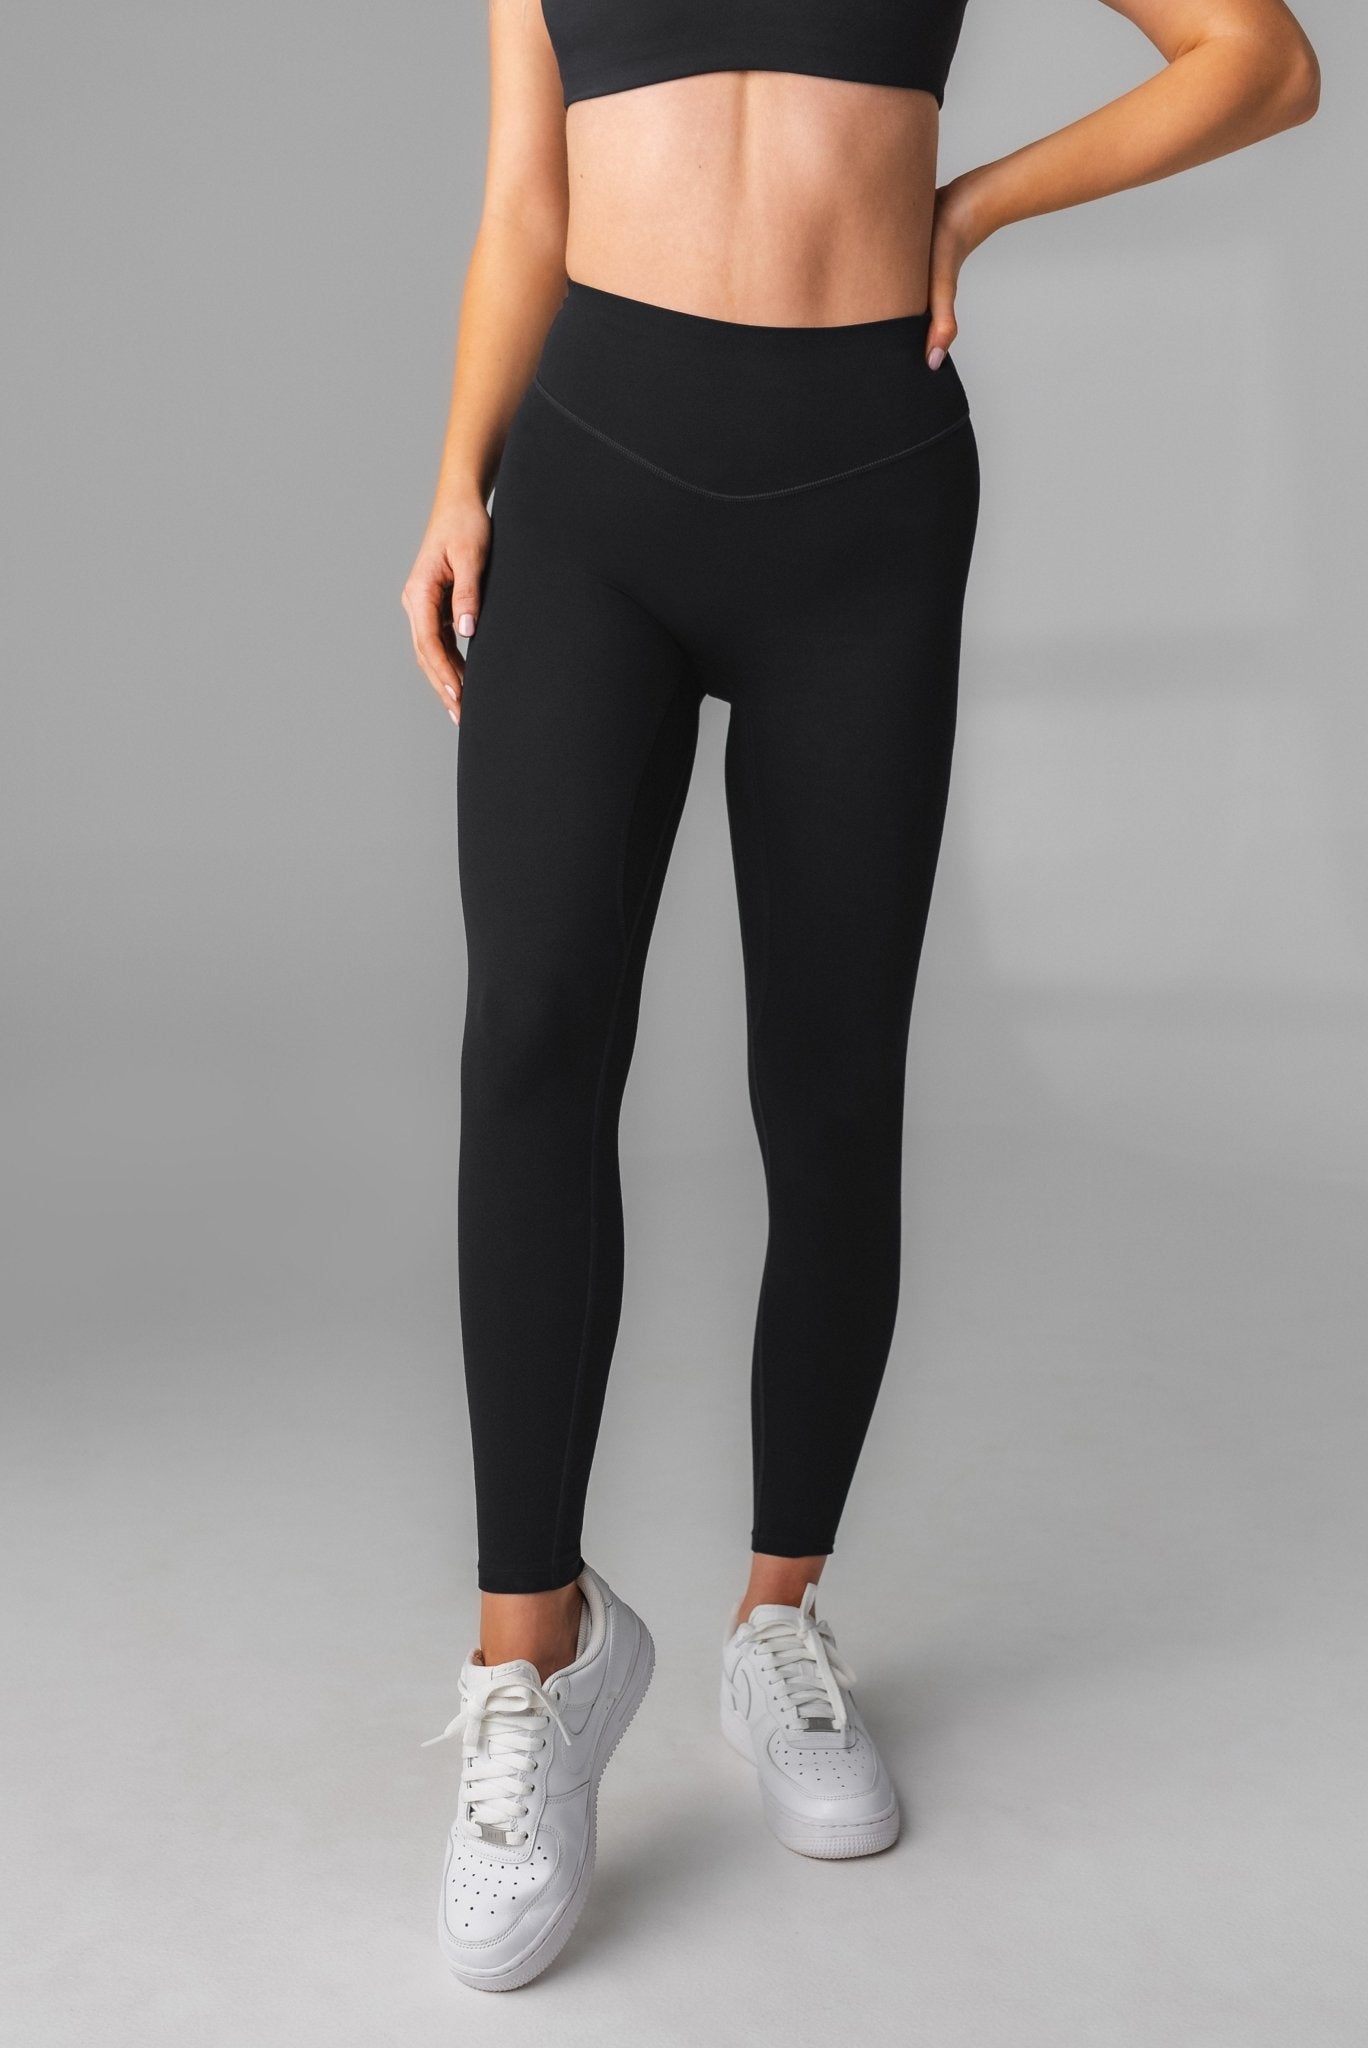 Women's Black Gray Striped Splicing Yoga Fitness Activewear Leggings |  Fitness activewear, Active wear leggings, Active wear pants